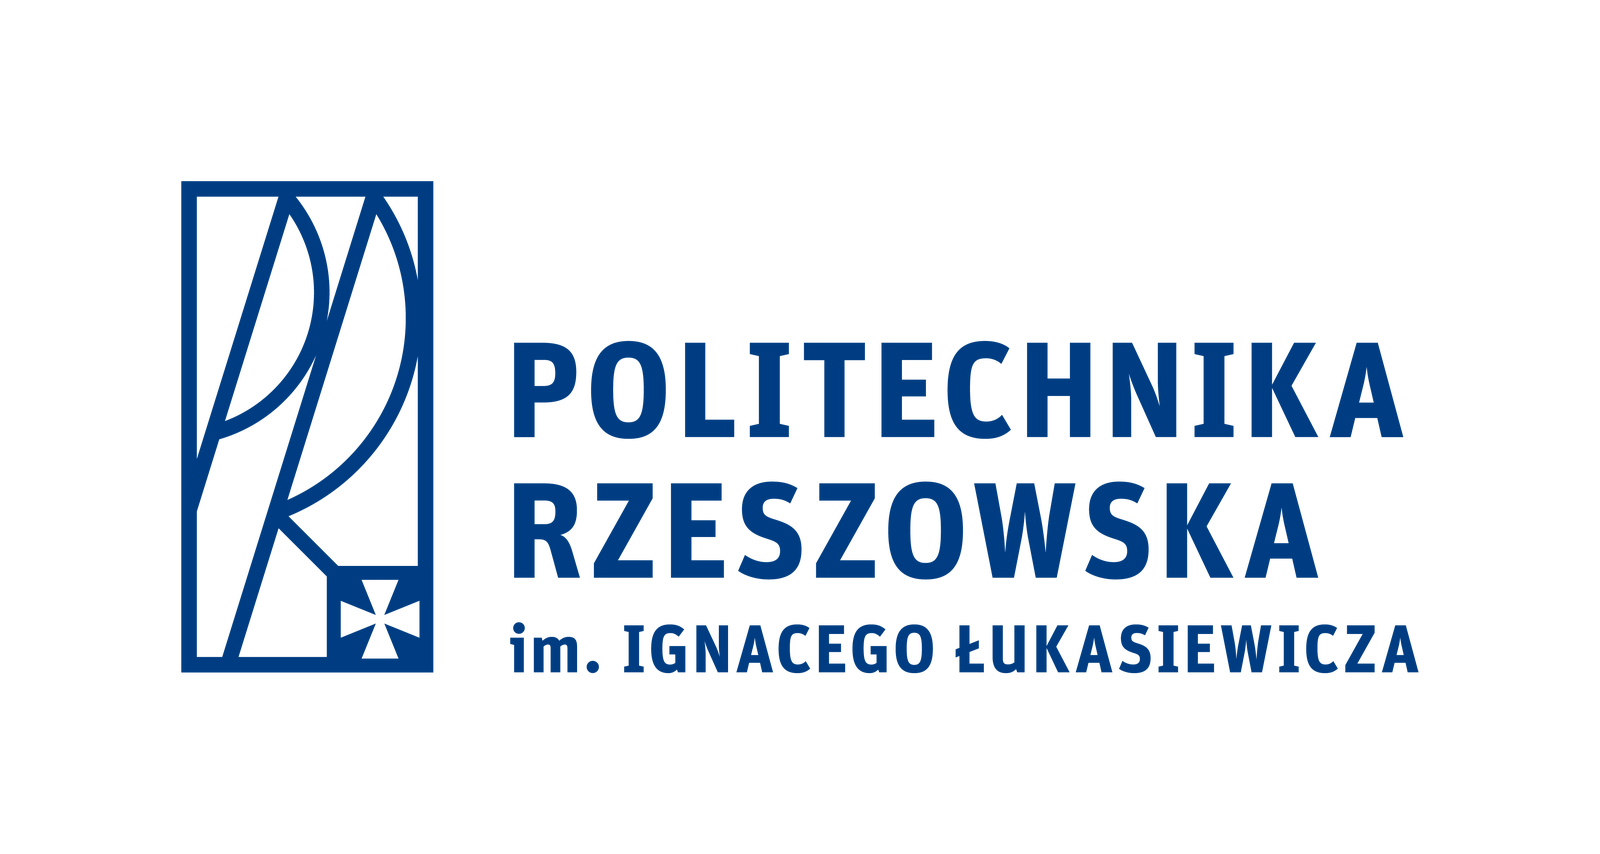 Uniwersytet Ekonomiczny w Poznaniu